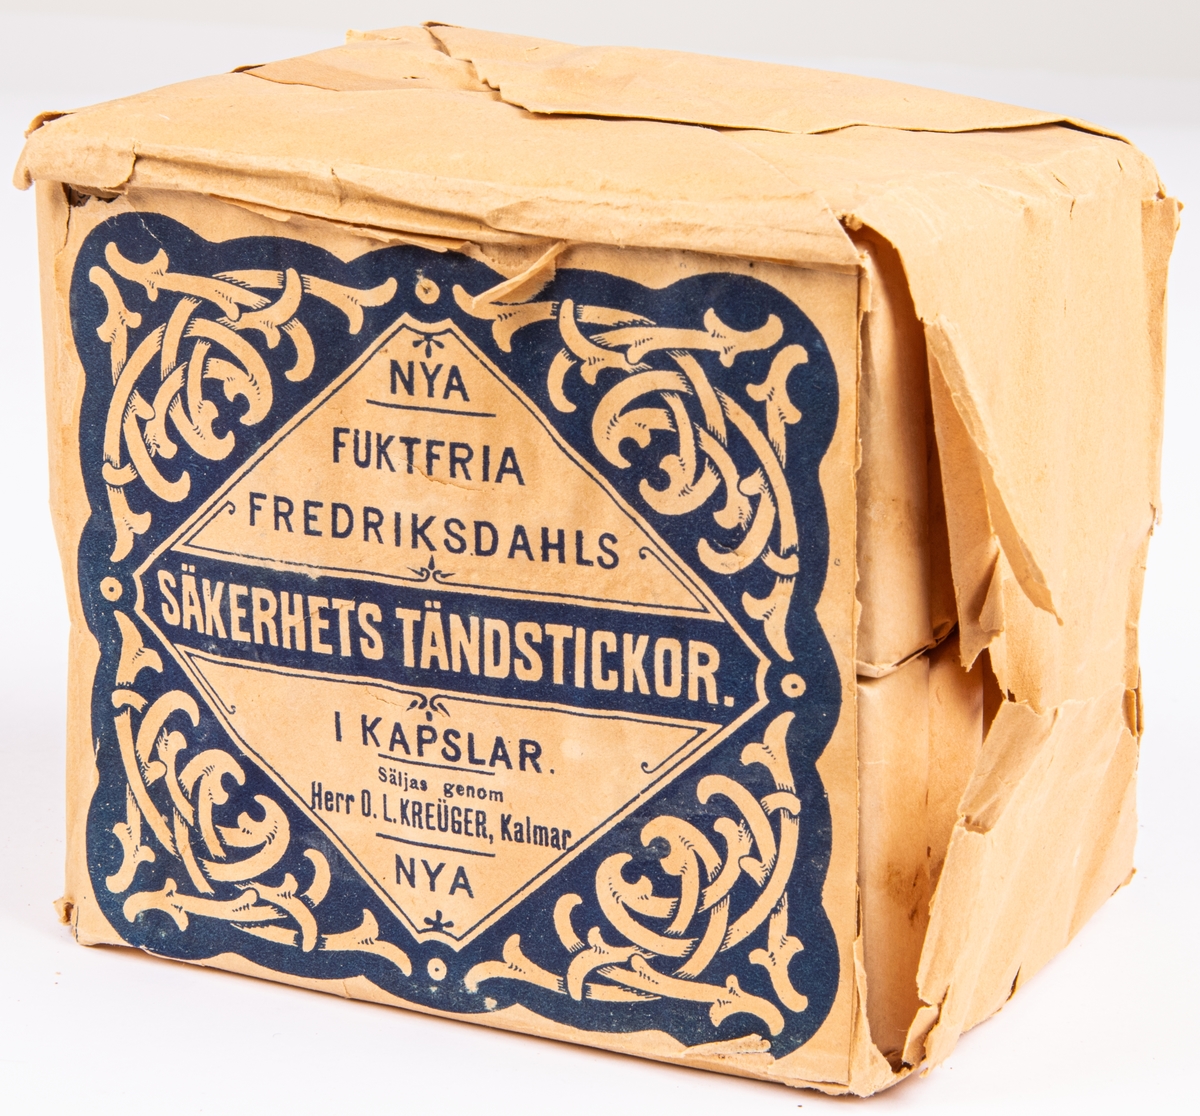 Kat.kort:
Tändstickor, etikett: "Nya fuktfria Fredriksdahls Säkerhets Tändstickor. I kapslar. Säljas genom Herr O. L. Kreüger, Kalmar."
(Blått tryck på vit botten)

1 större förpackning och 4 små förpackningar.